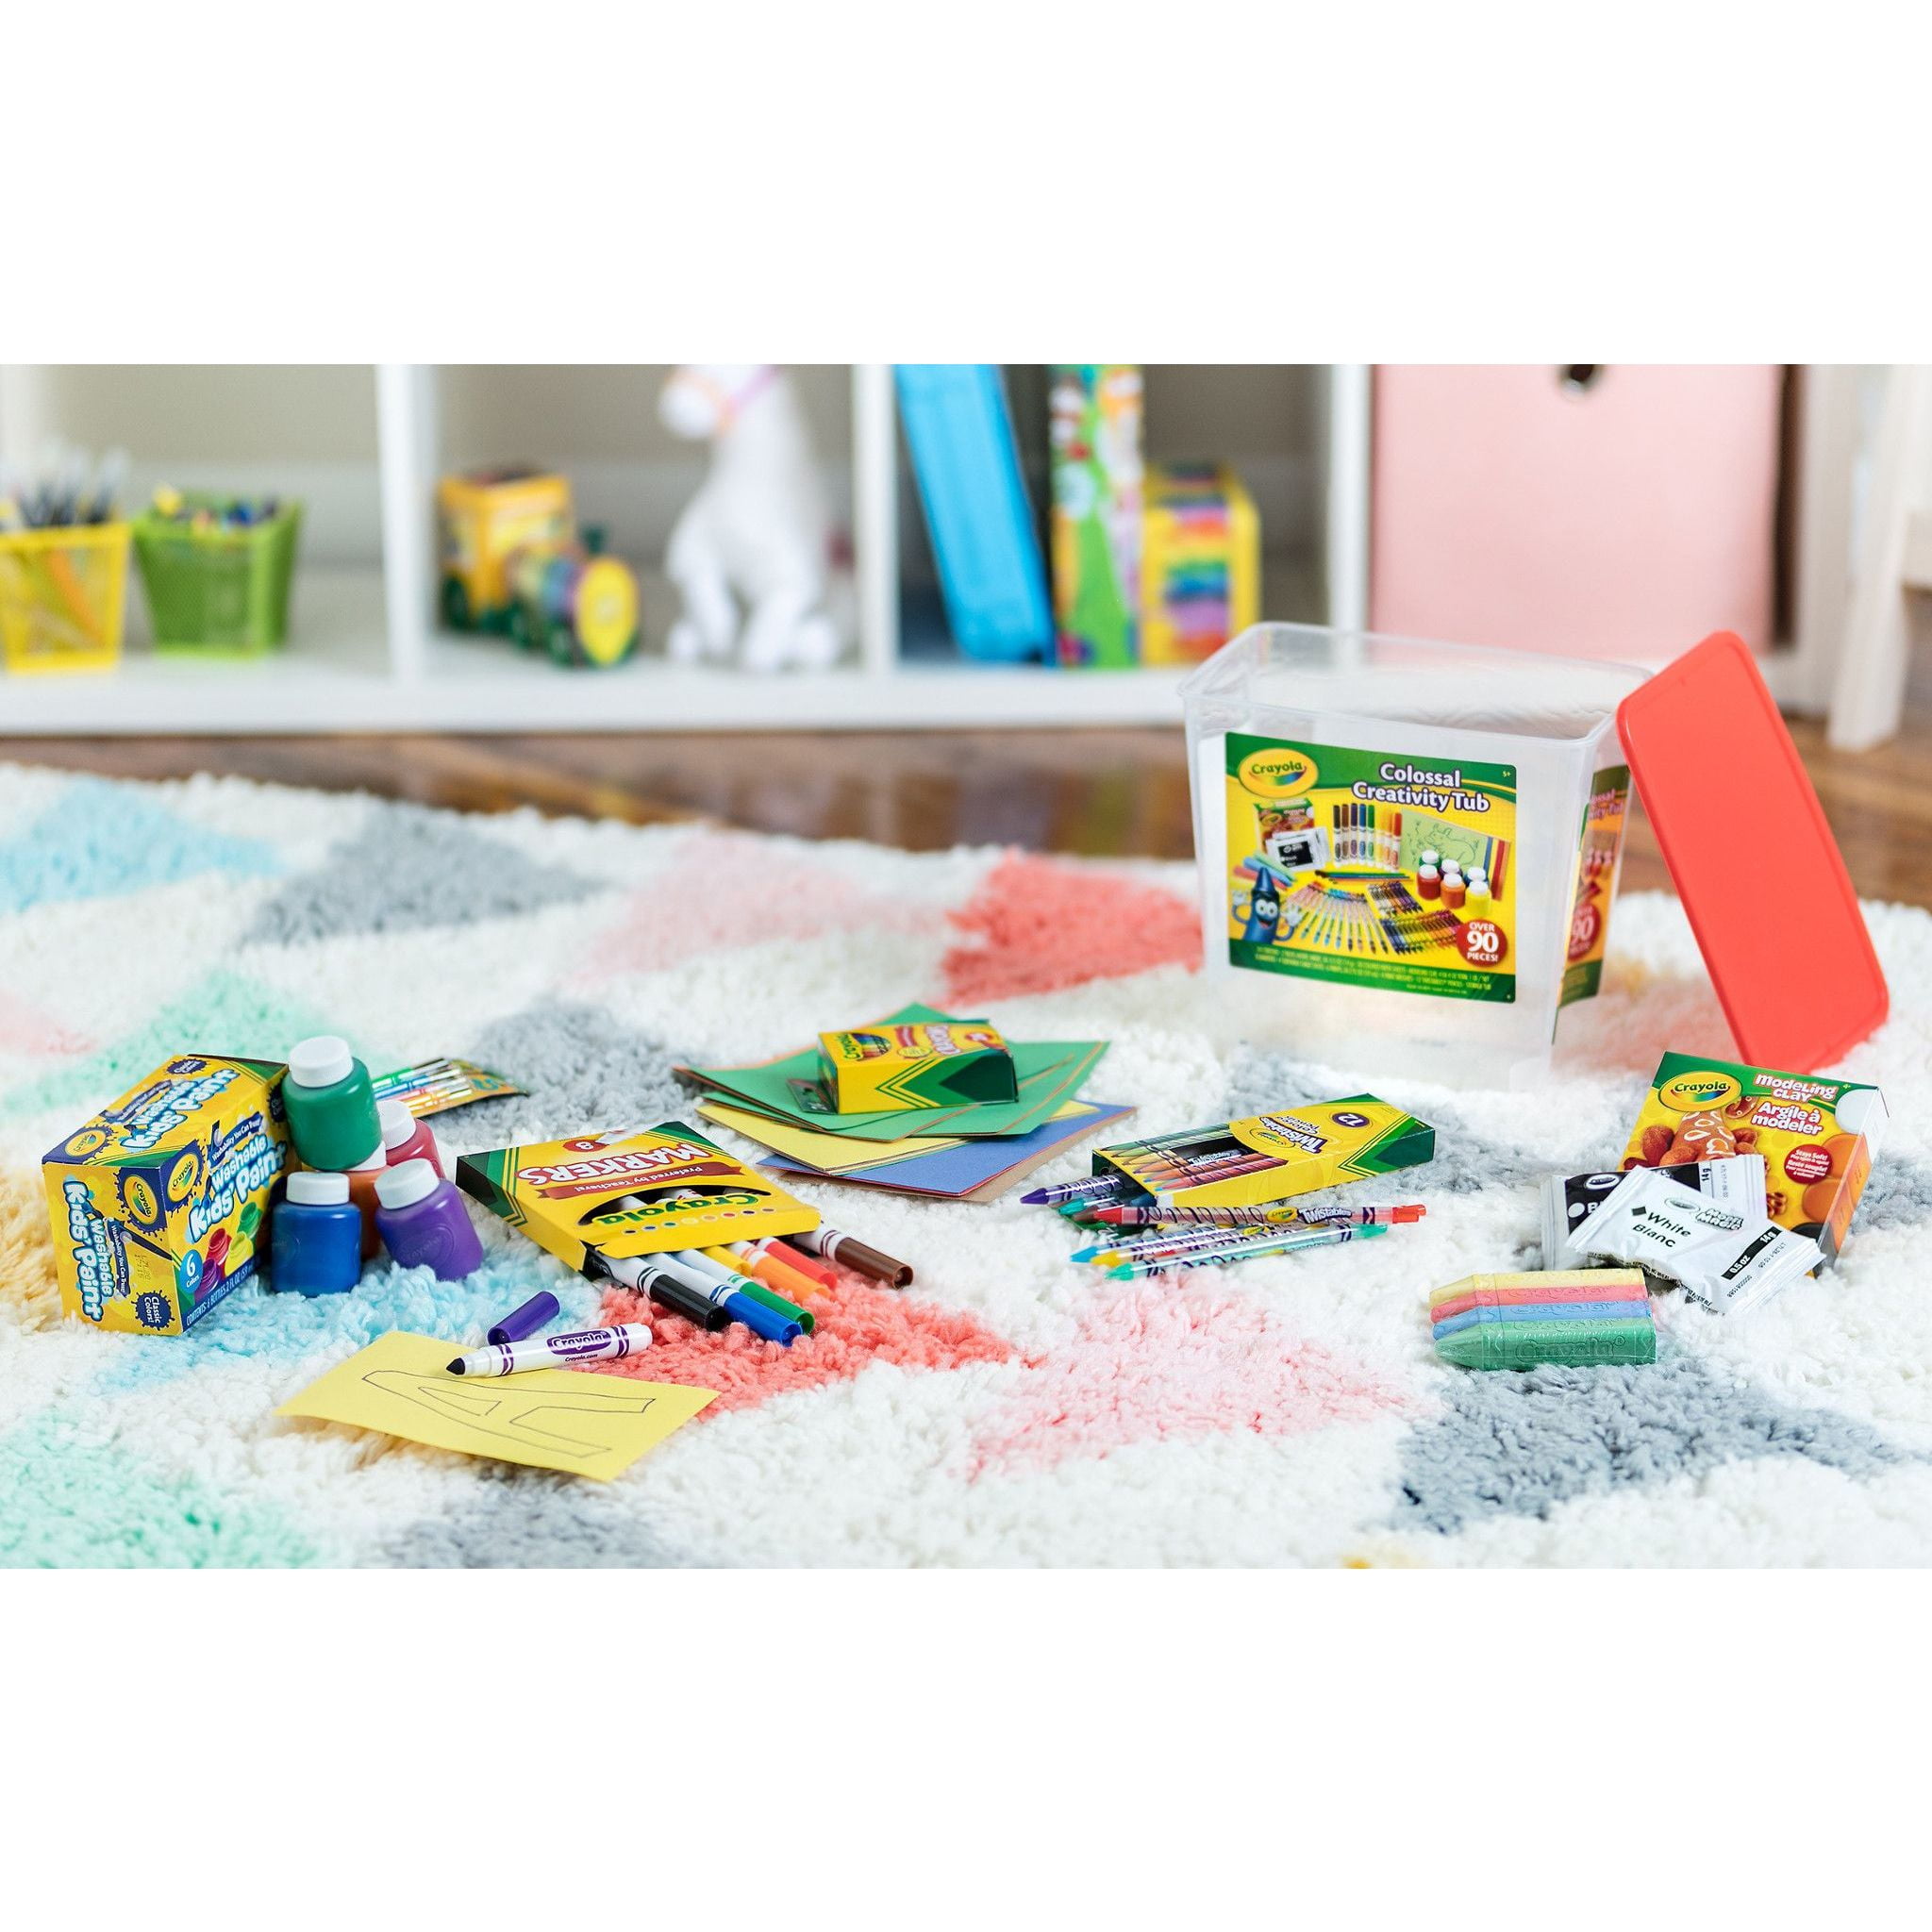 Crayola Creativity Tub, Art Set, 102 Pcs, Toys for Kids, School